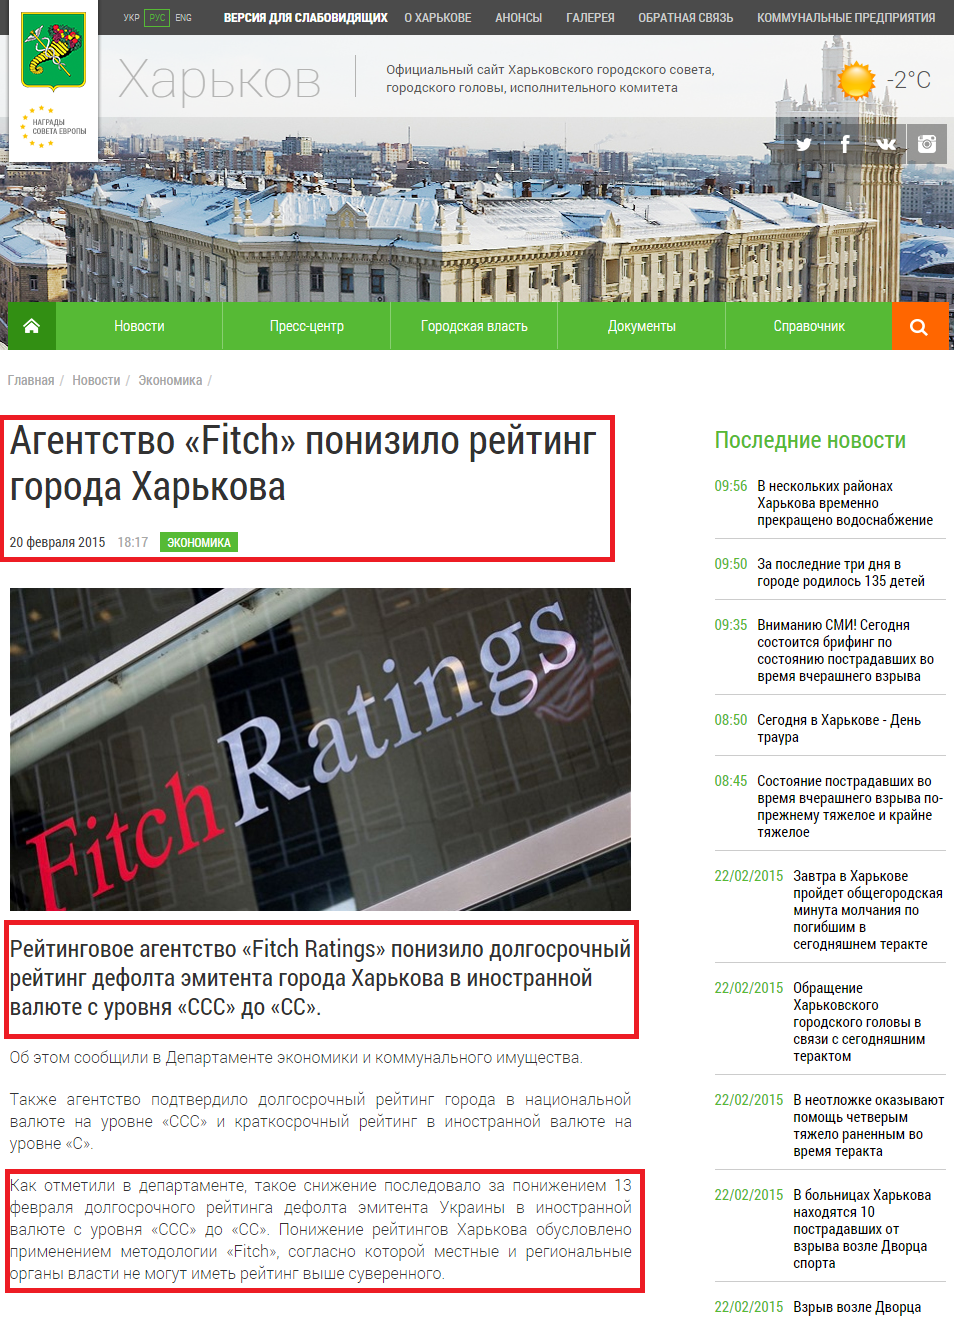 http://www.city.kharkov.ua/ru/news/agentstvo-fitch-znizilo-reyting-mista-kharkova-27074.html